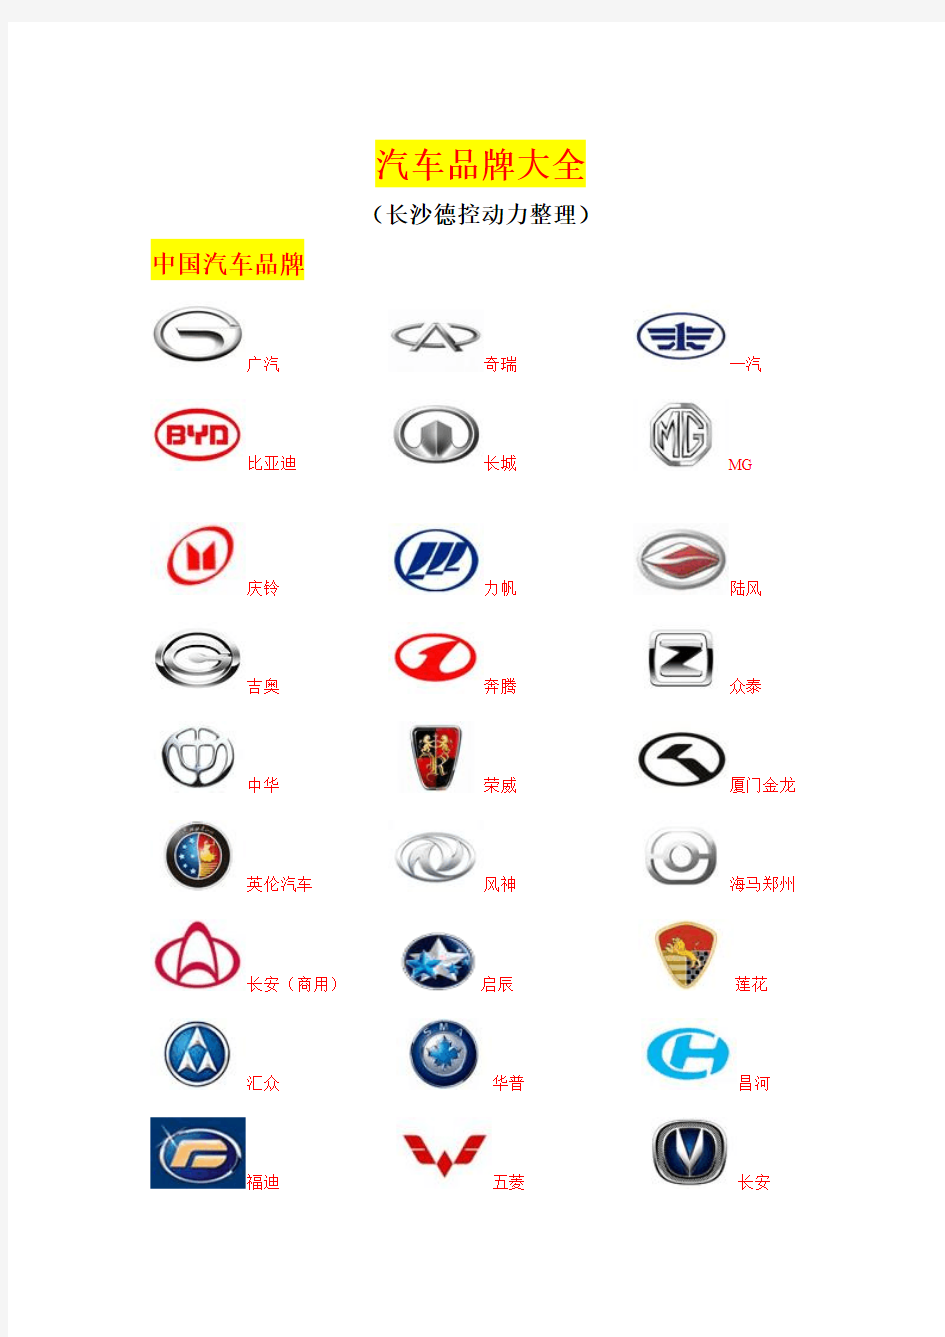 全球汽车品牌大全(中英文对照)